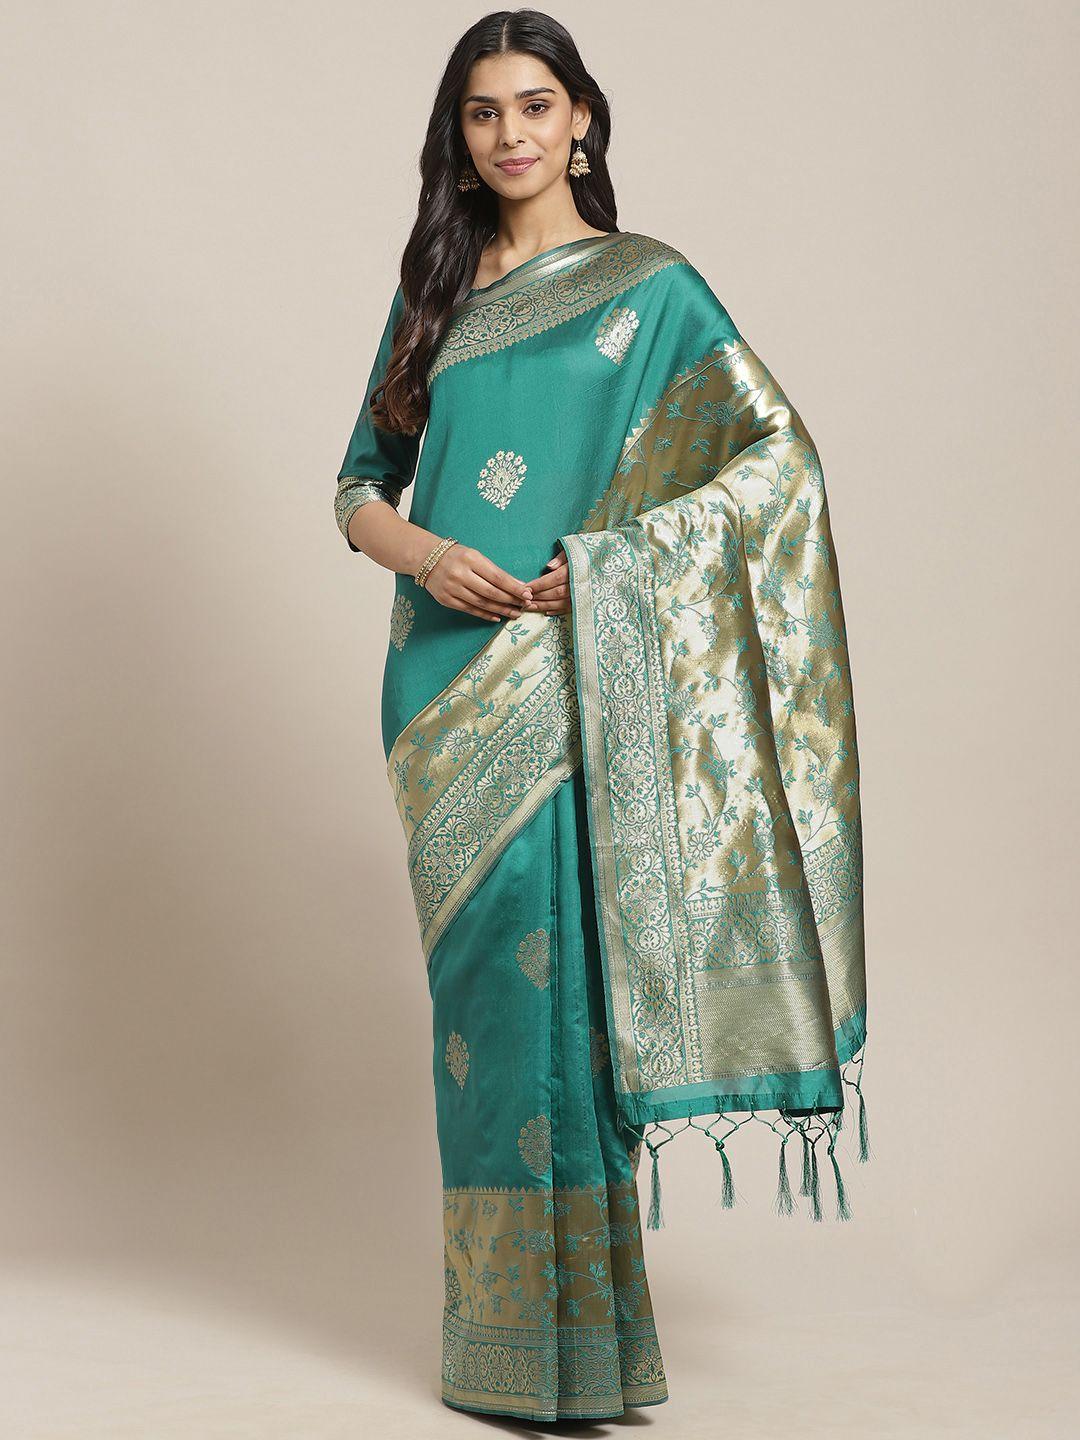 saree-mall-teal-green-&-golden-woven-design-banarasi-saree